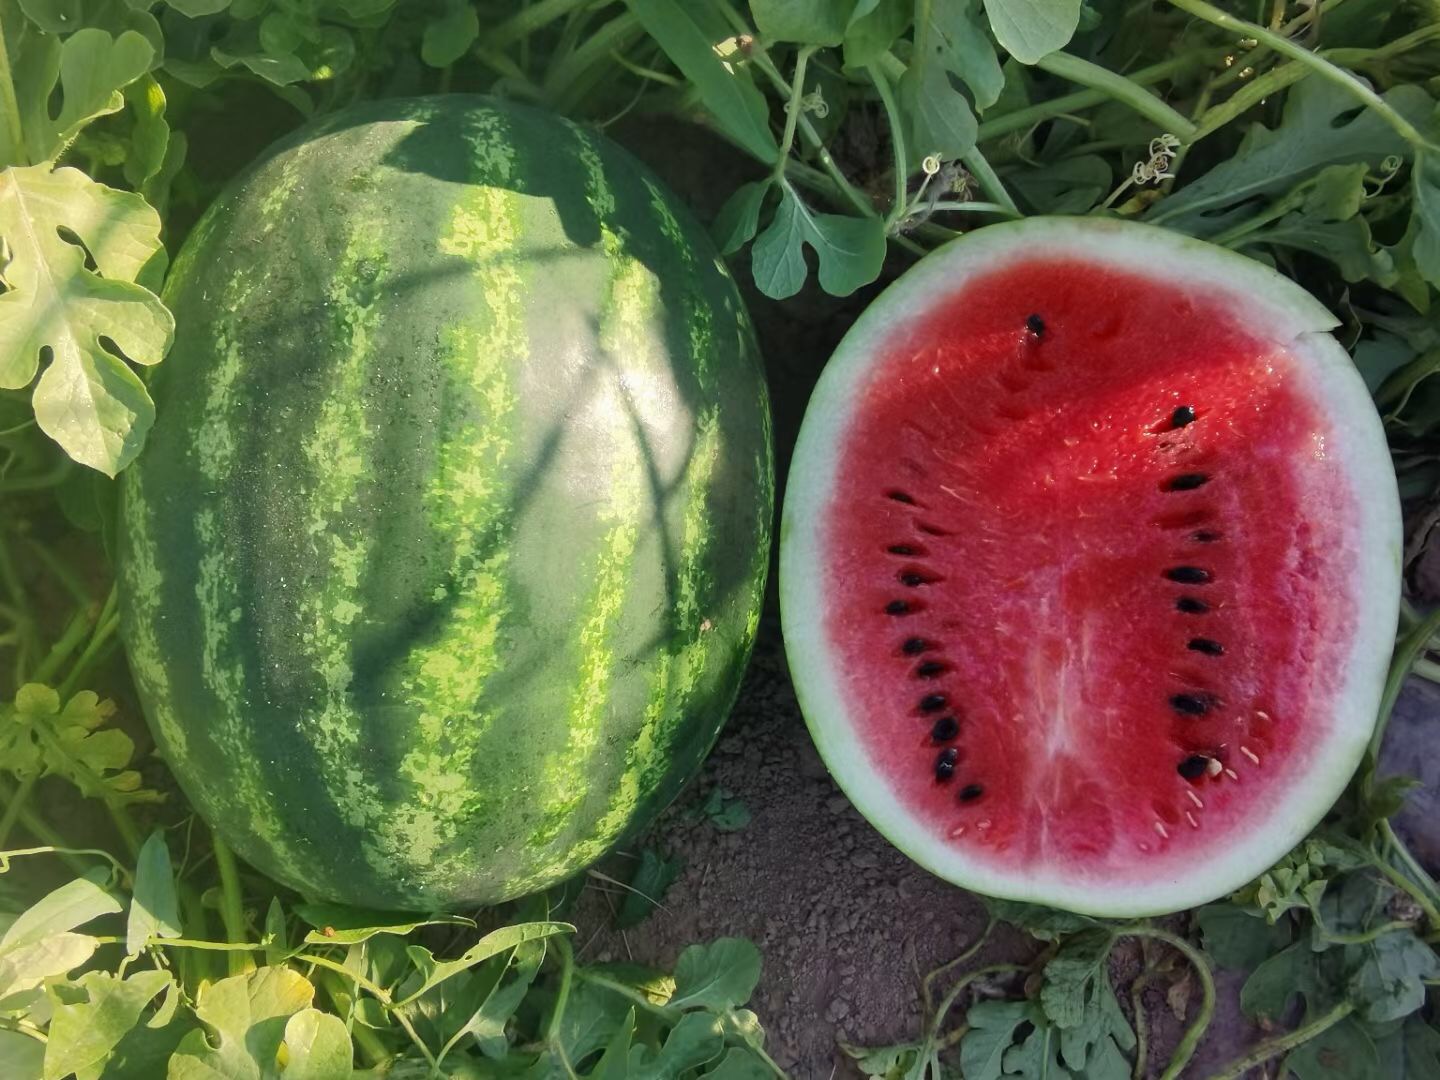 Suntoday chaliston watermelon seeds(11026)